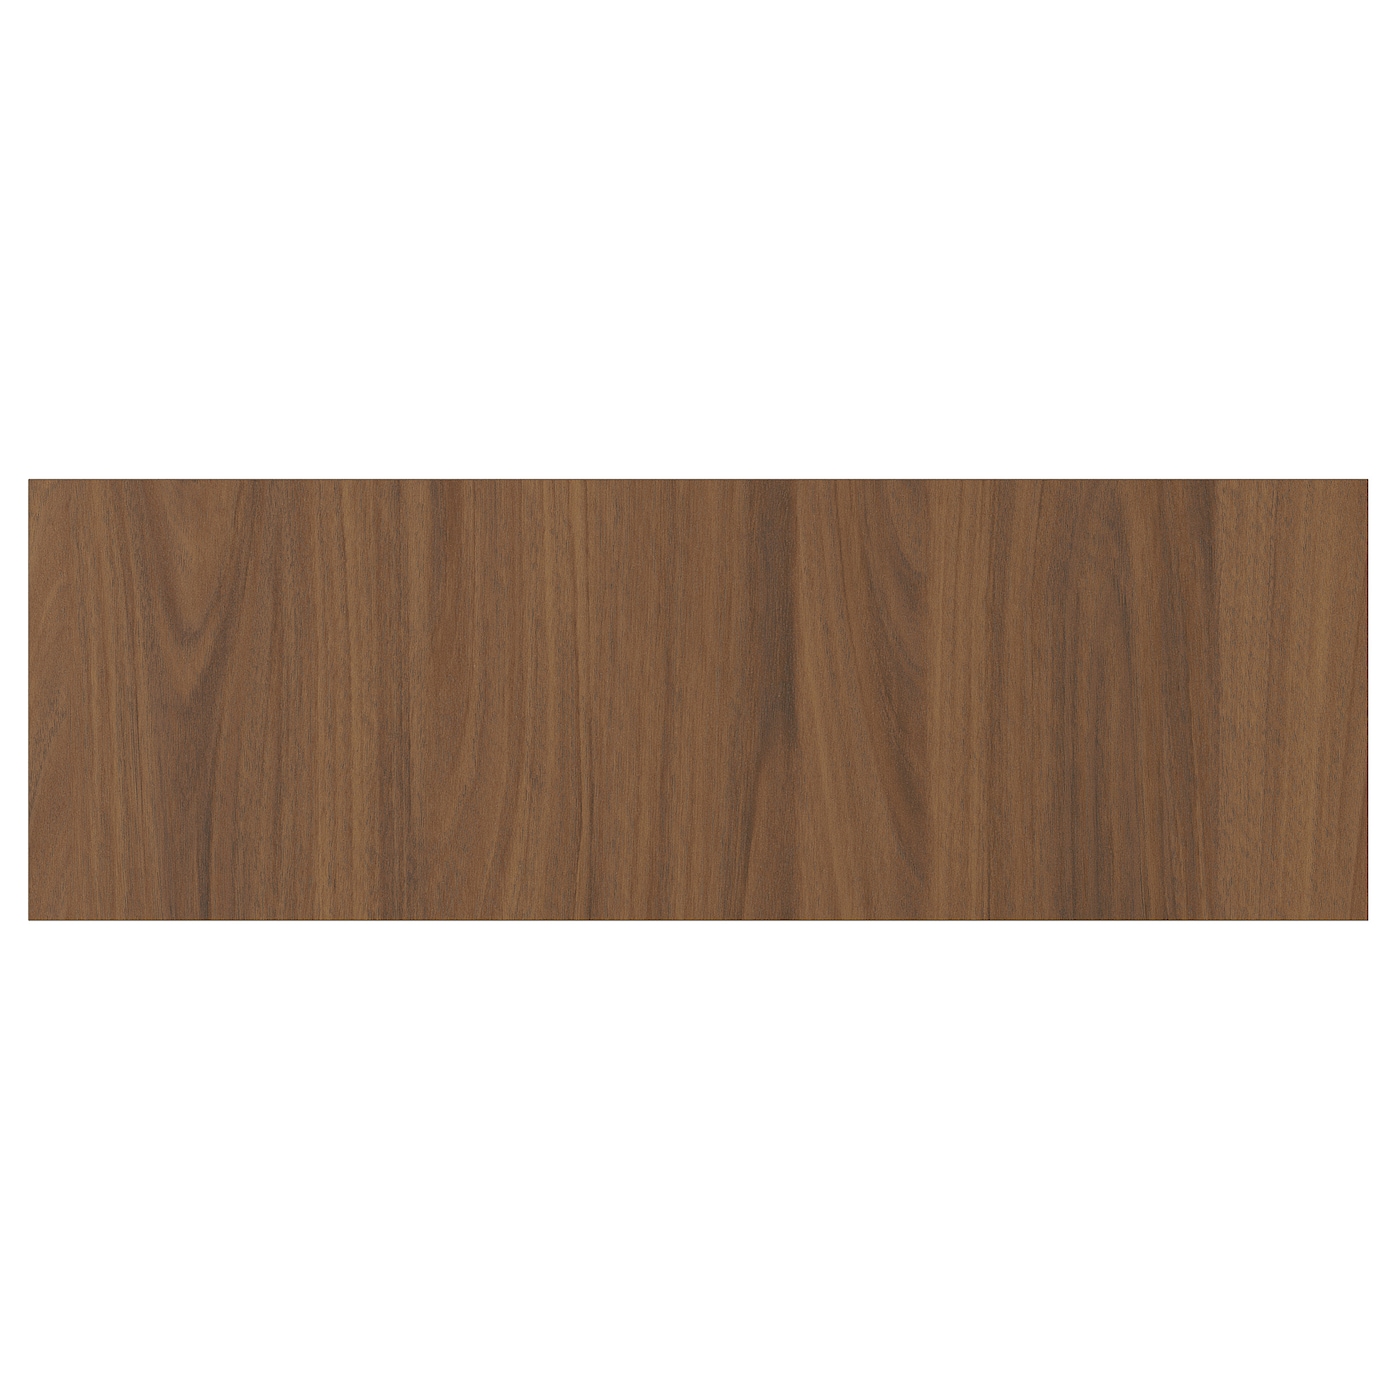 Дверца  - TISTORP IKEA/ ТИСТОРП ИКЕА,  60х20 см, коричневый орех